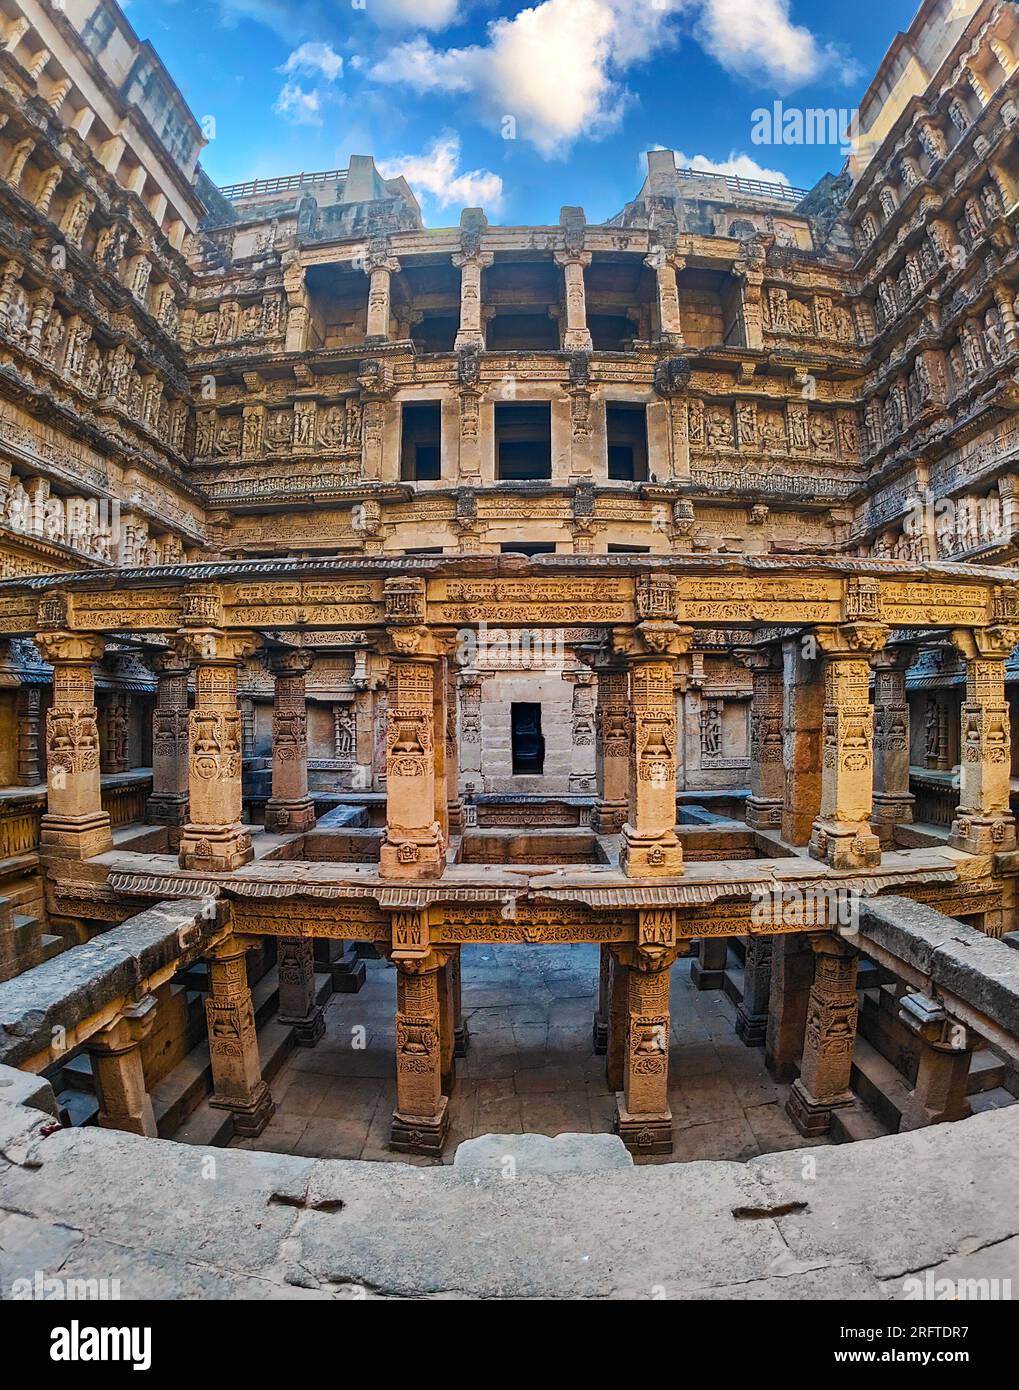 Rani ki Vav, un chef-d'œuvre architectural remarquable situé dans l'état du Gujarat, en Inde, Banque D'Images